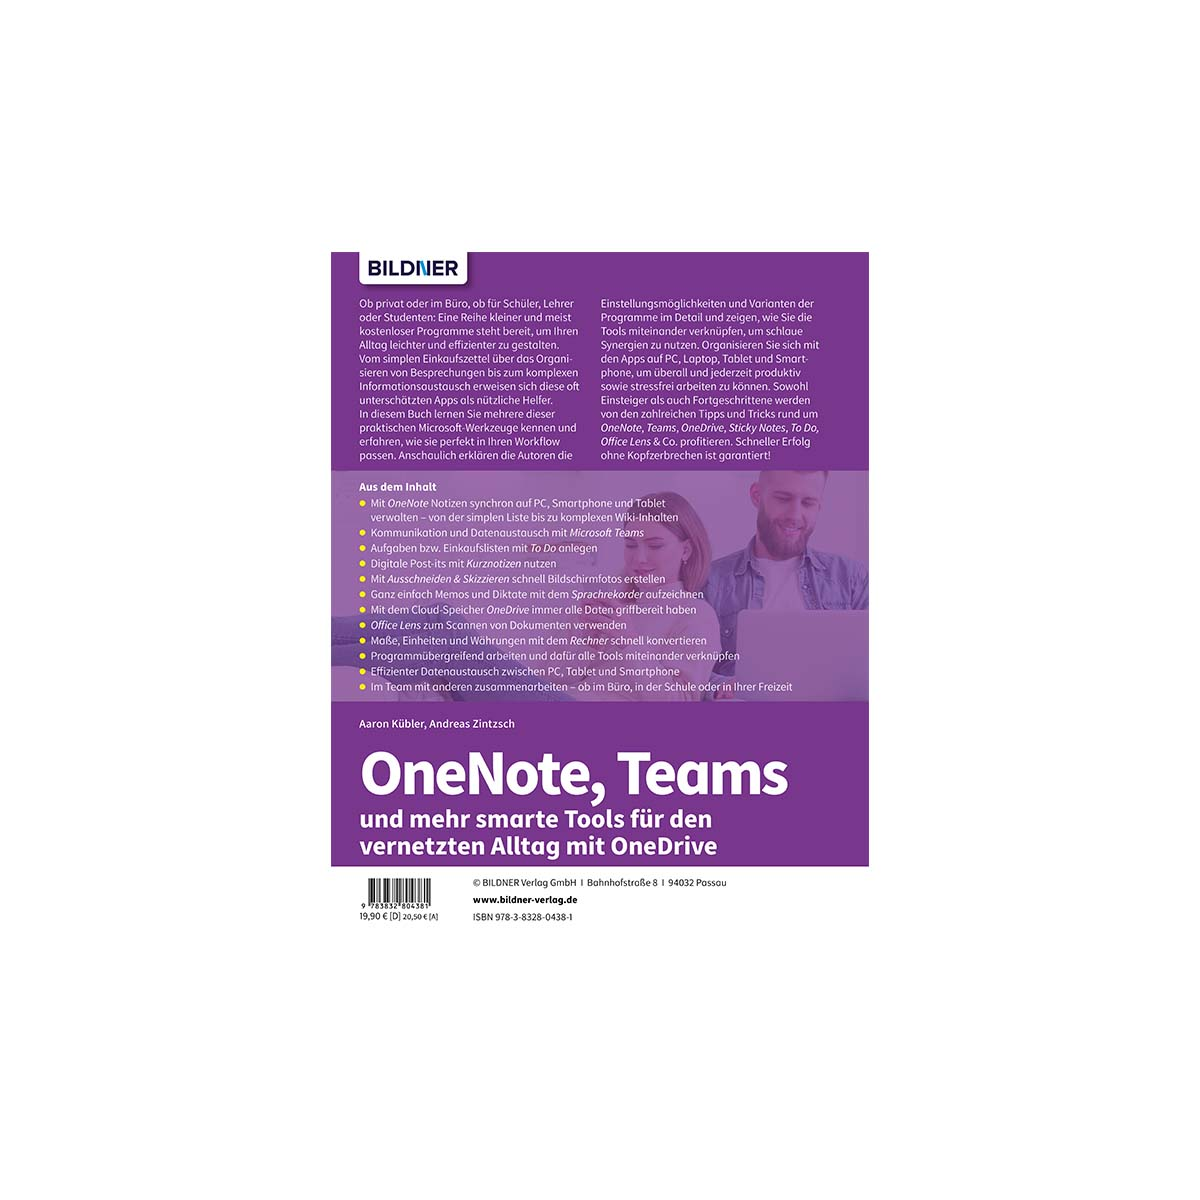 OneNote, Teams und mehr smarte Tools Microsoft-Alltag vernetzten den für